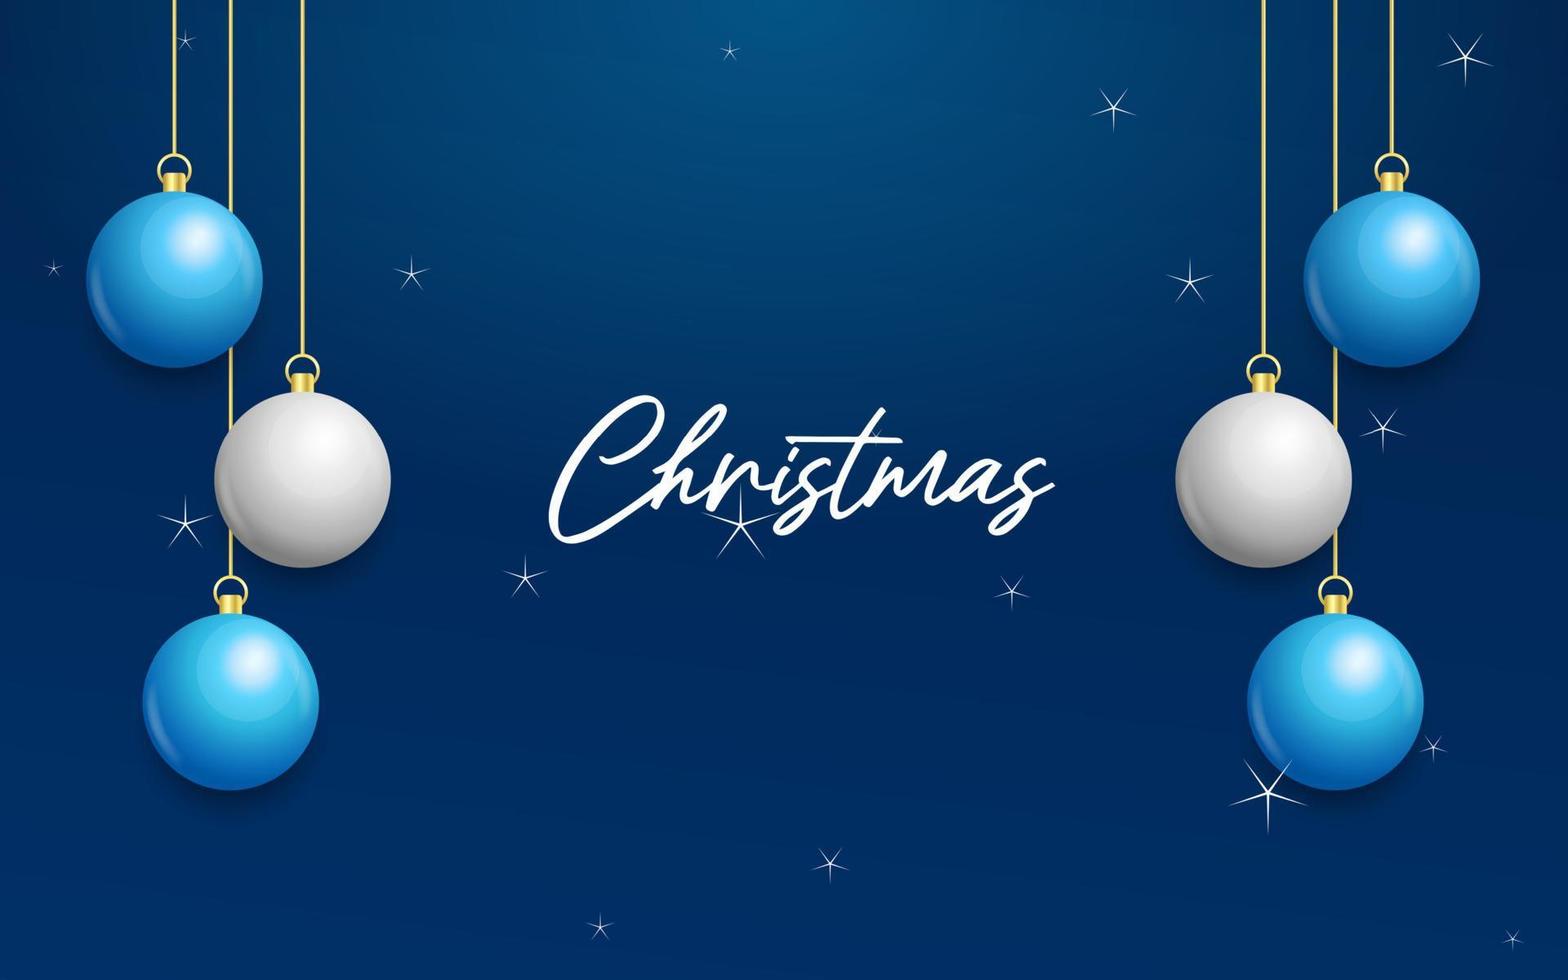 weihnachtsblauer hintergrund mit hängenden glänzenden weißen und silbernen kugeln. frohe weihnachten grußkarte vektor